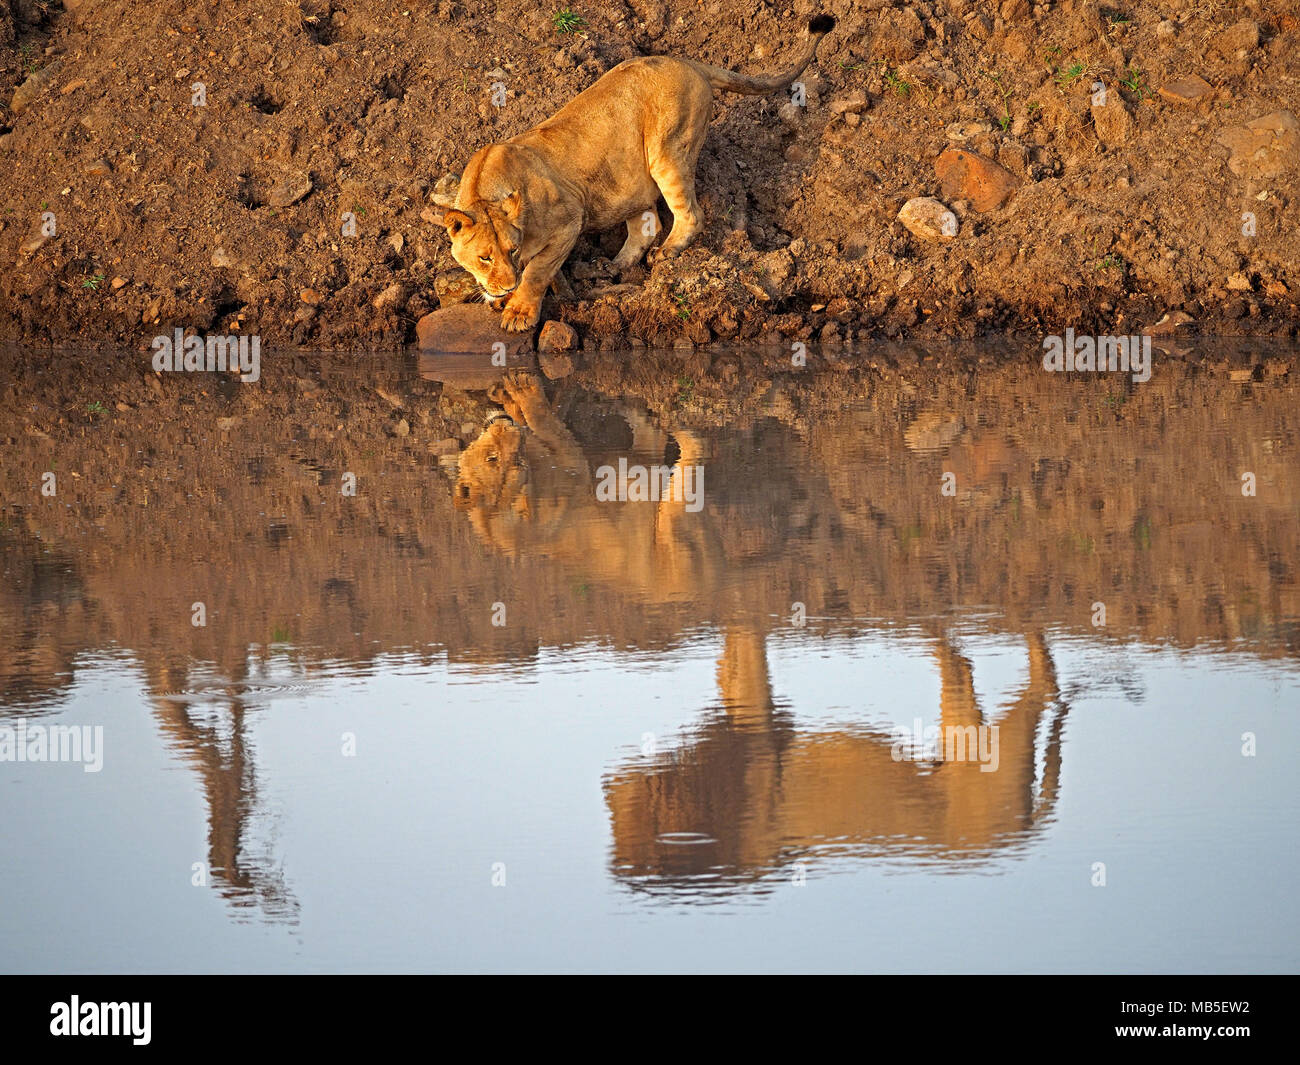 Löwin (Panthera leo) Alkoholkonsum am Wasserloch erscheint die Reflexionen von sich und ihre männliche Löwe mate in der Größeren Mara, Kenia, Afrika zu prüfen. Stockfoto